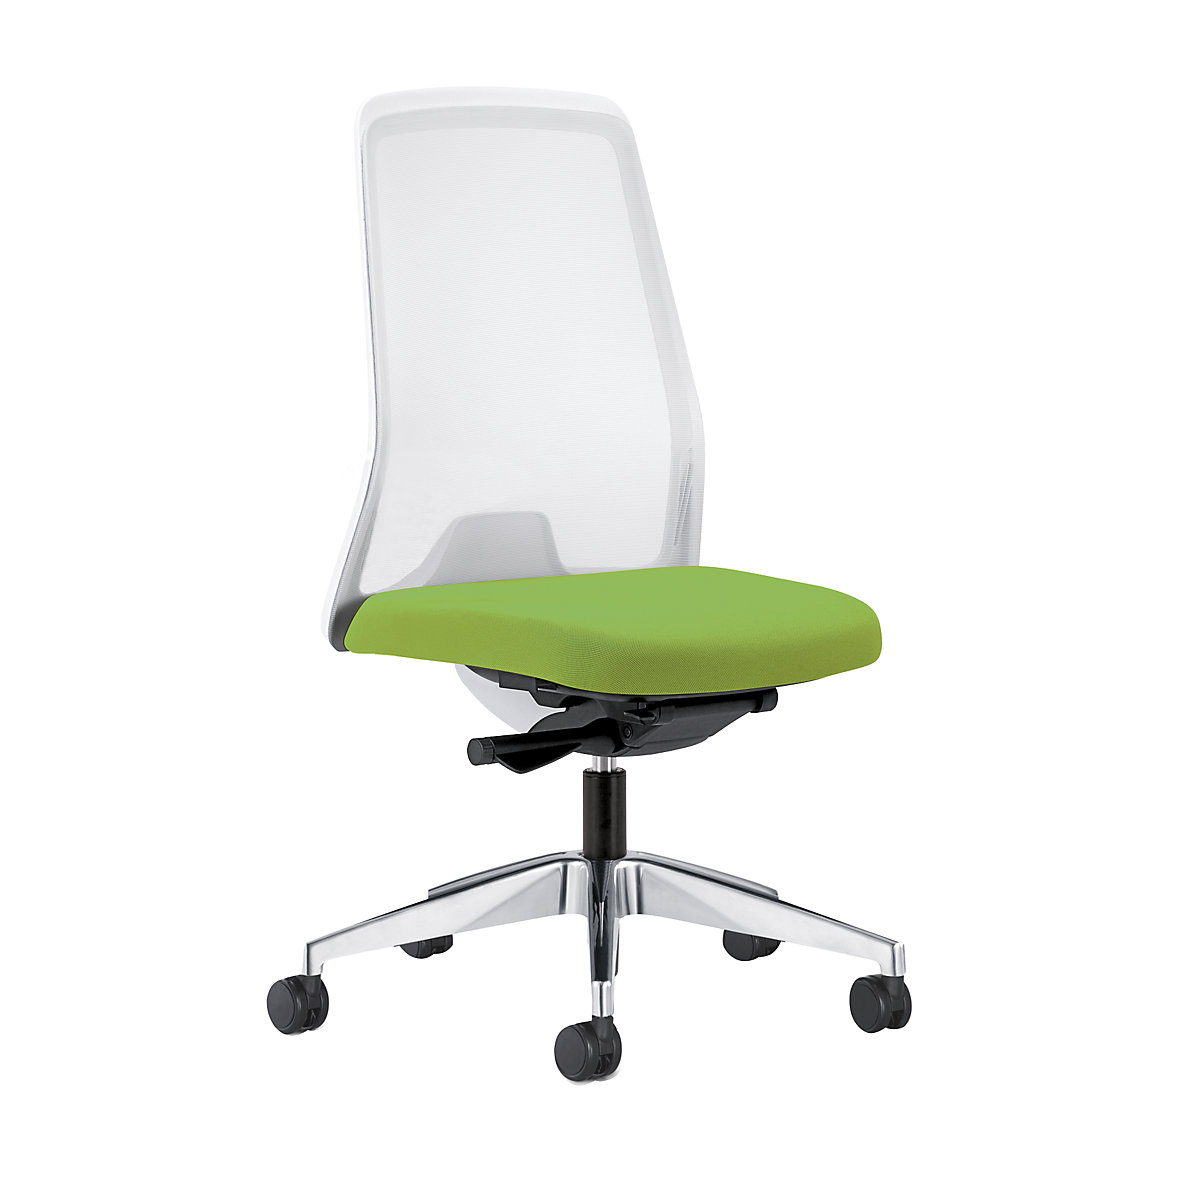 Udobna okretna stolica EVERY, mrežasti naslon za leđa u bijeloj boji – interstuhl, polirano postolje, s mekanim kotačima, u žutozelenoj boji, dubina sjedala 430 mm-4